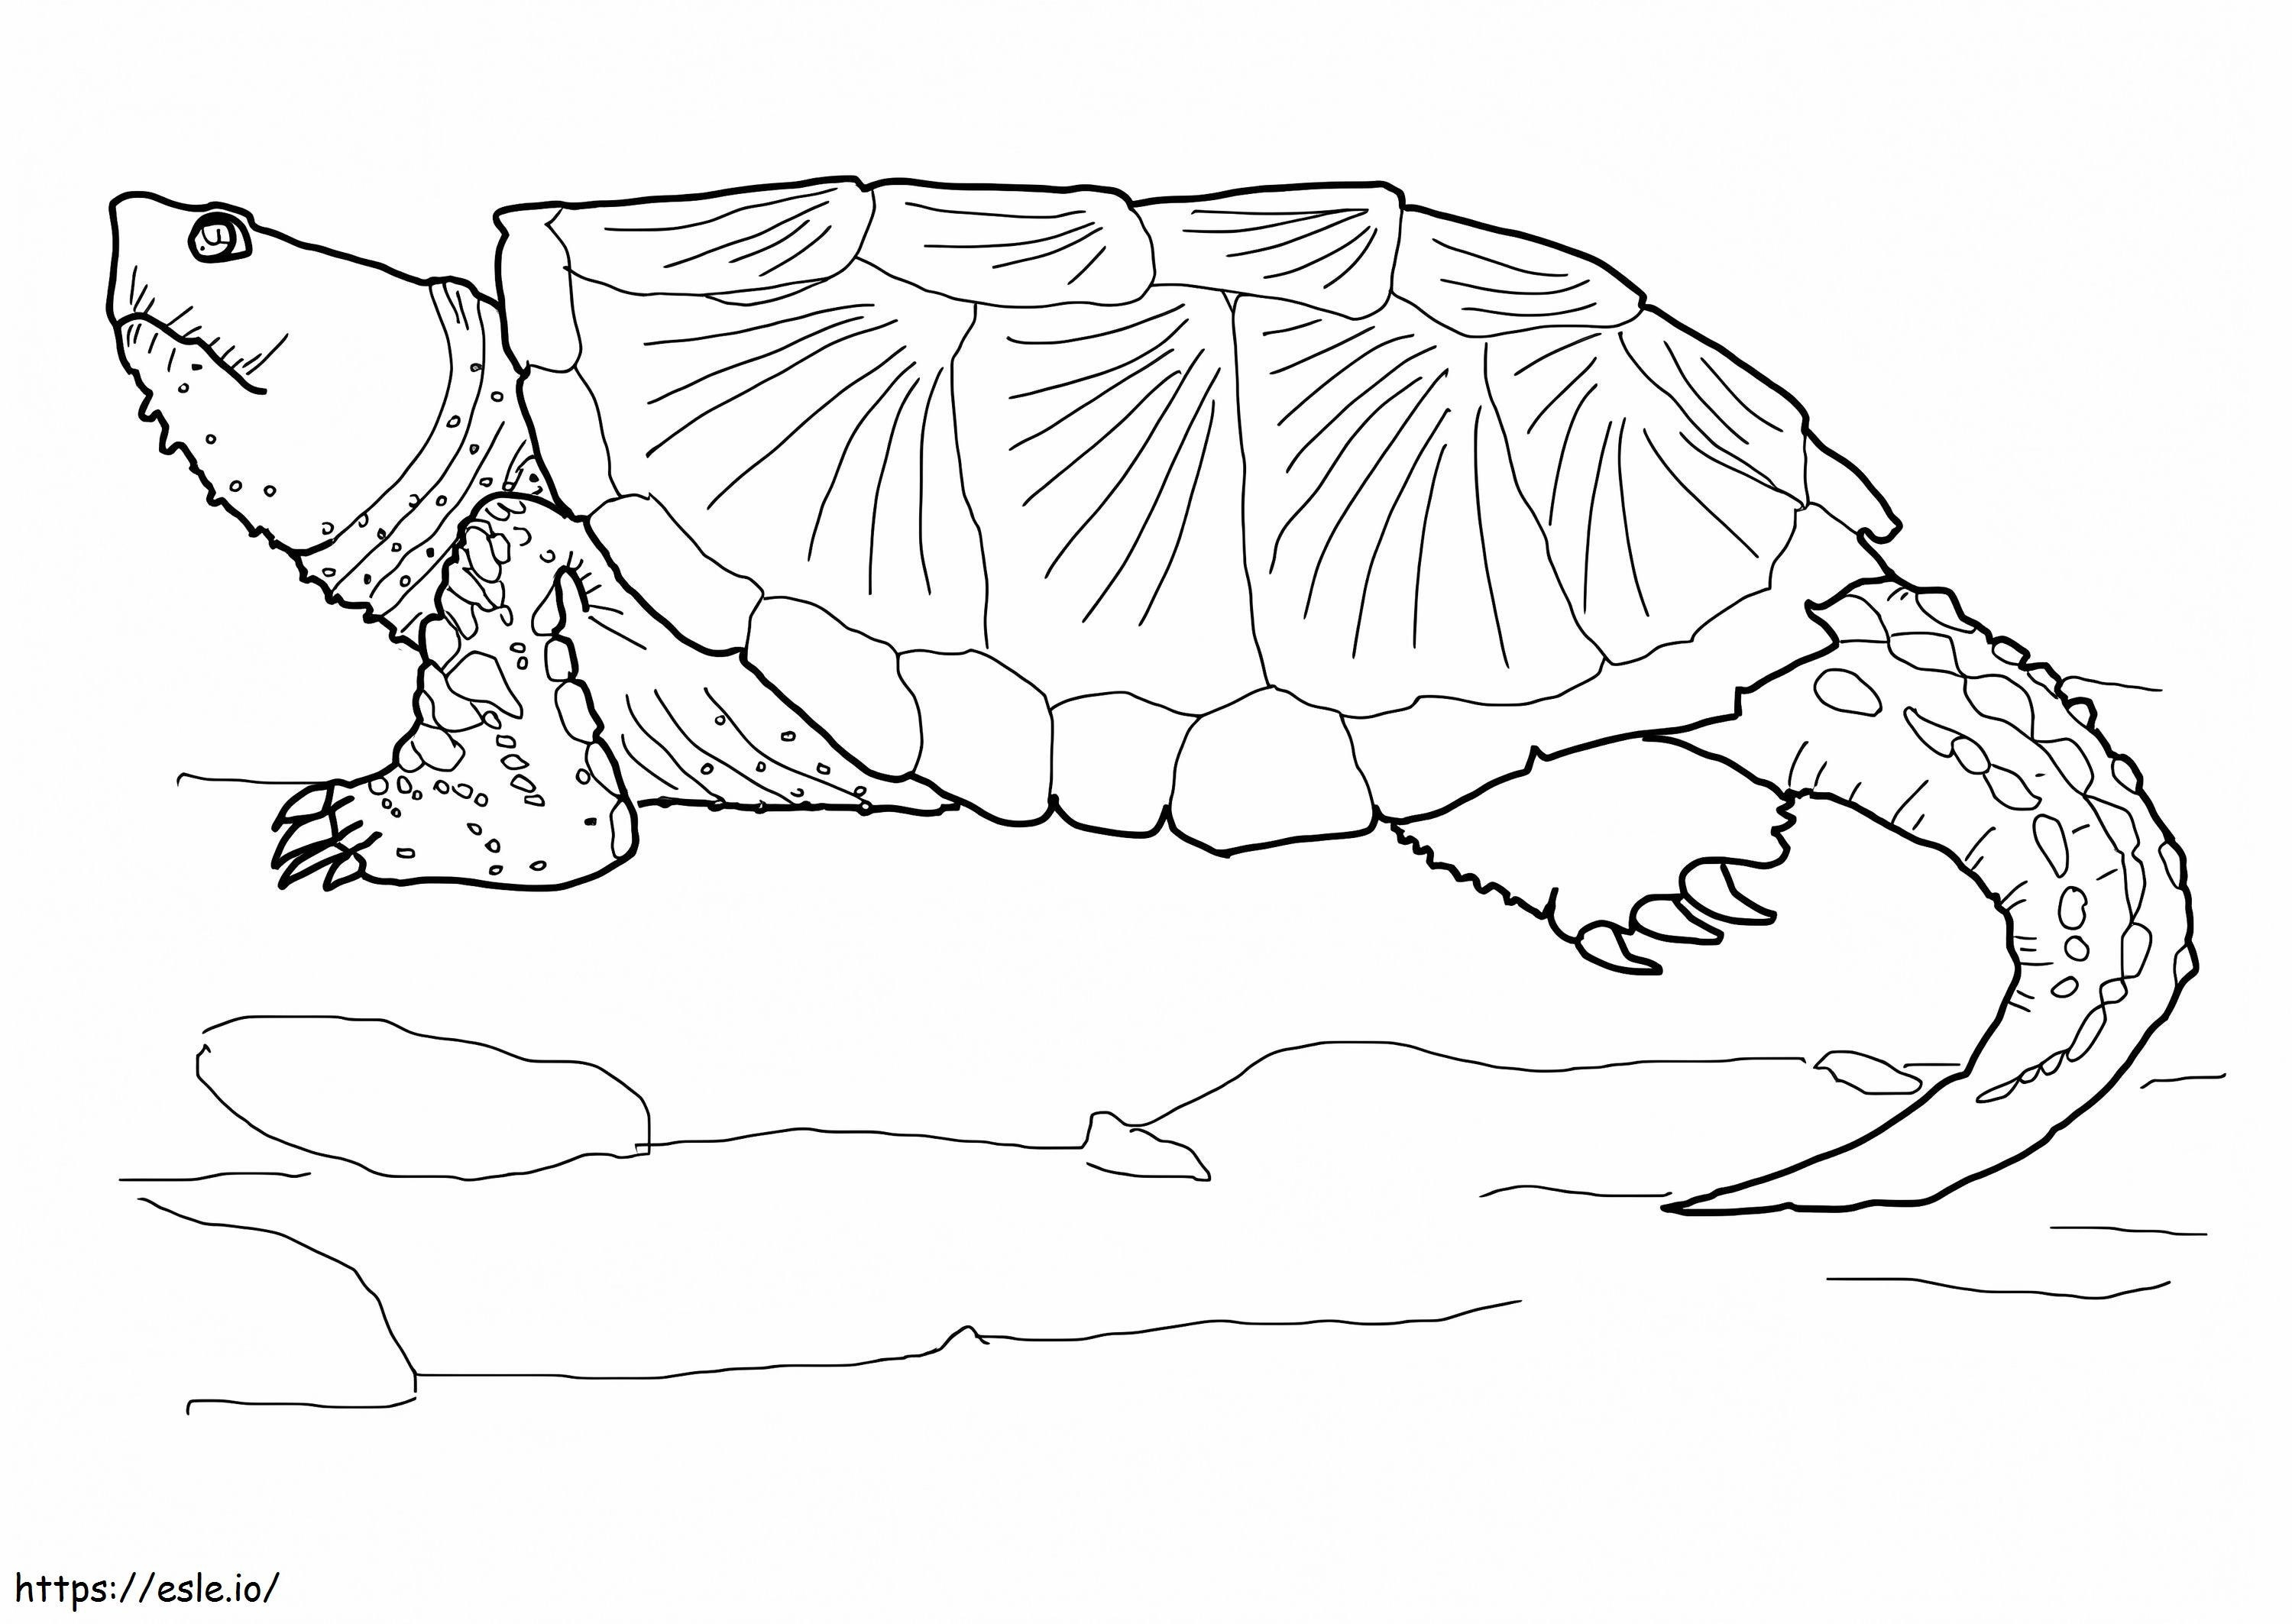 Tartaruga agarradora comum 1 para colorir